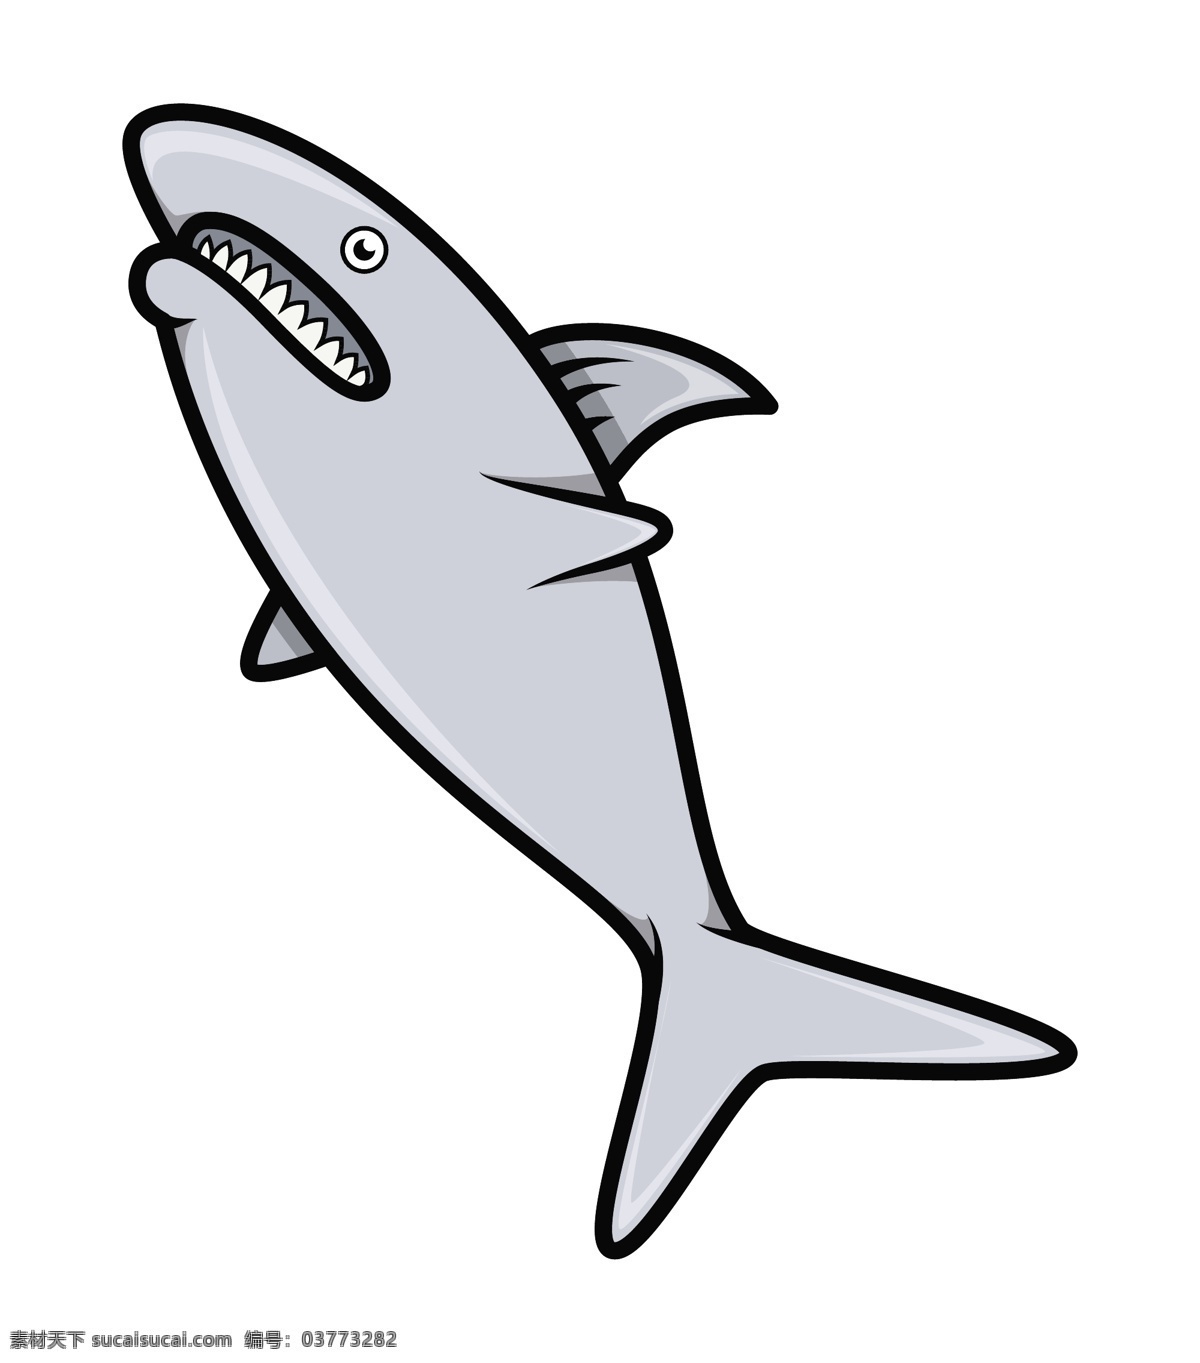 鲨鱼 卡通 插画 矢量 矢量图 其他矢量图